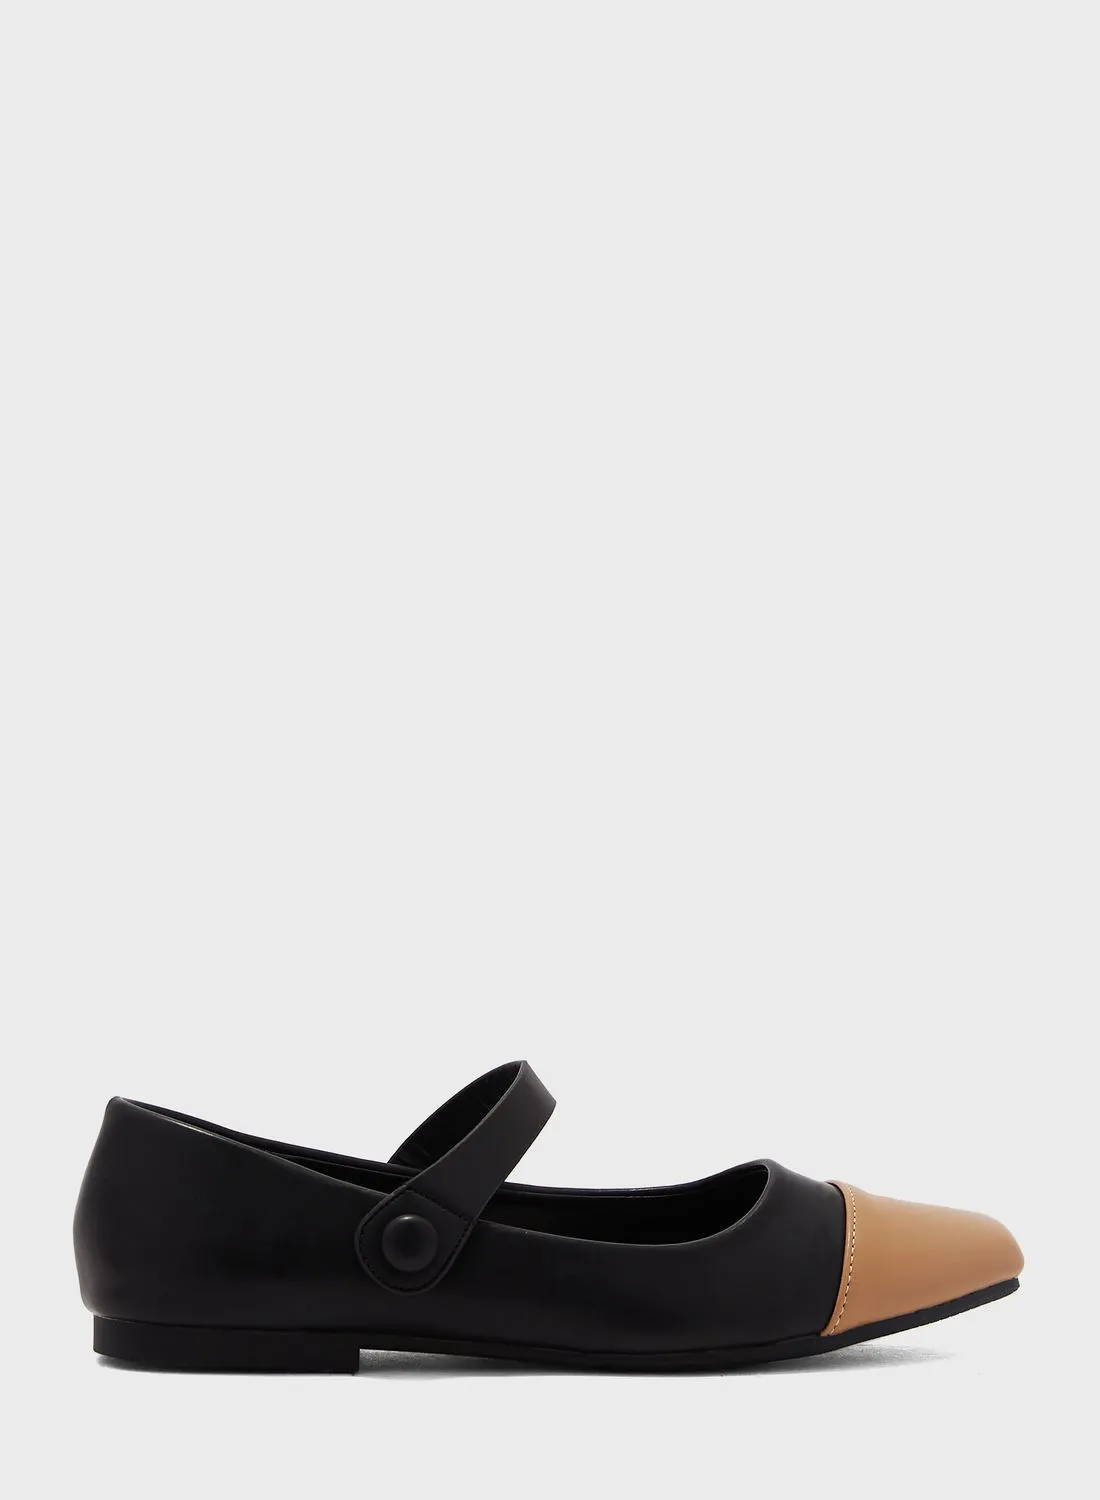 حذاء باليرينا مسطح بمقدمة مربعة وشريط للكاحل باللون الأسود